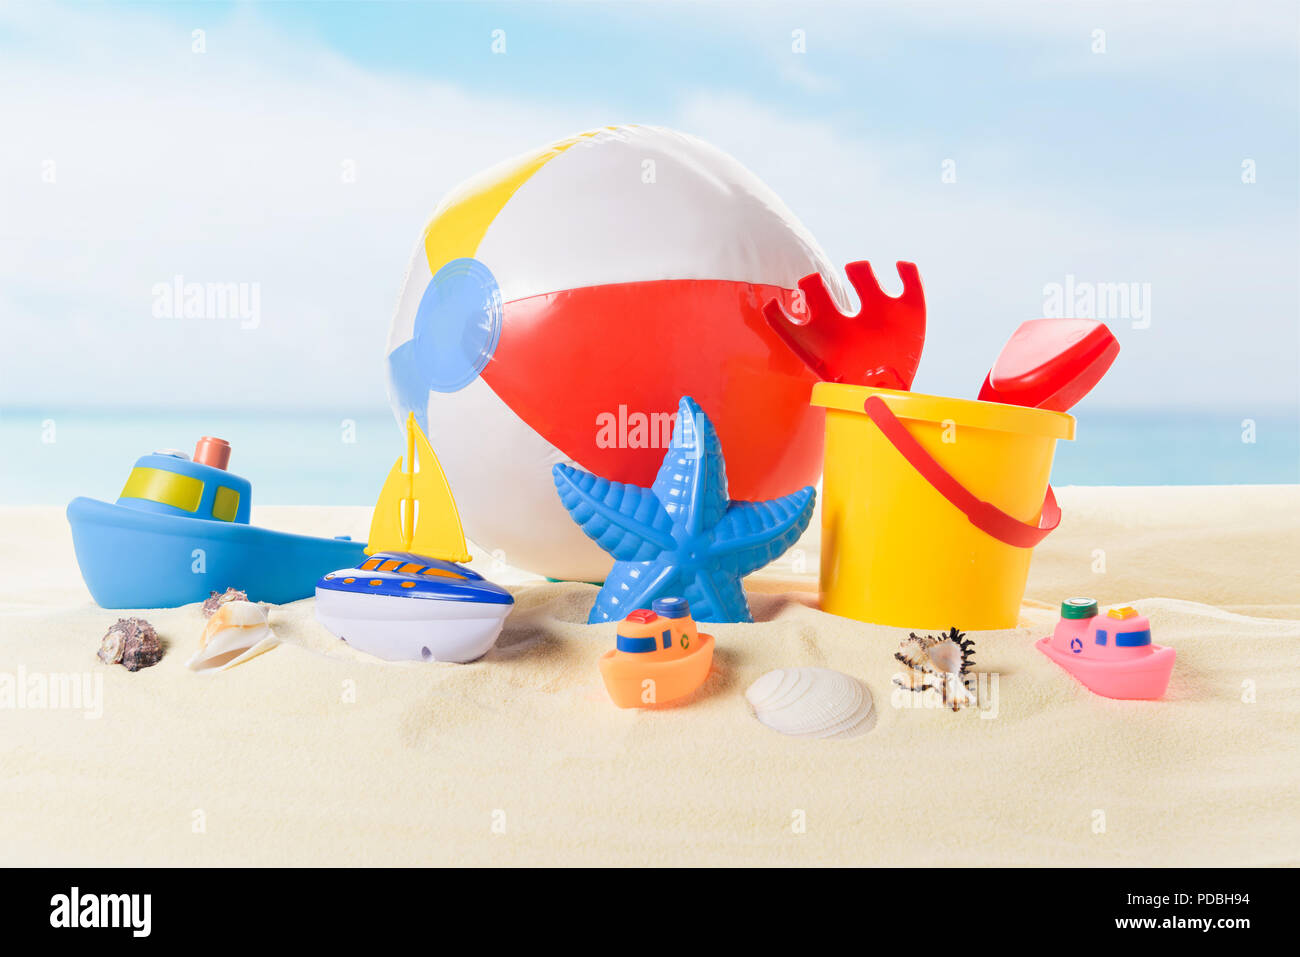 Ballon de plage et du godet avec des jouets dans le sable sur fond de ciel bleu Banque D'Images